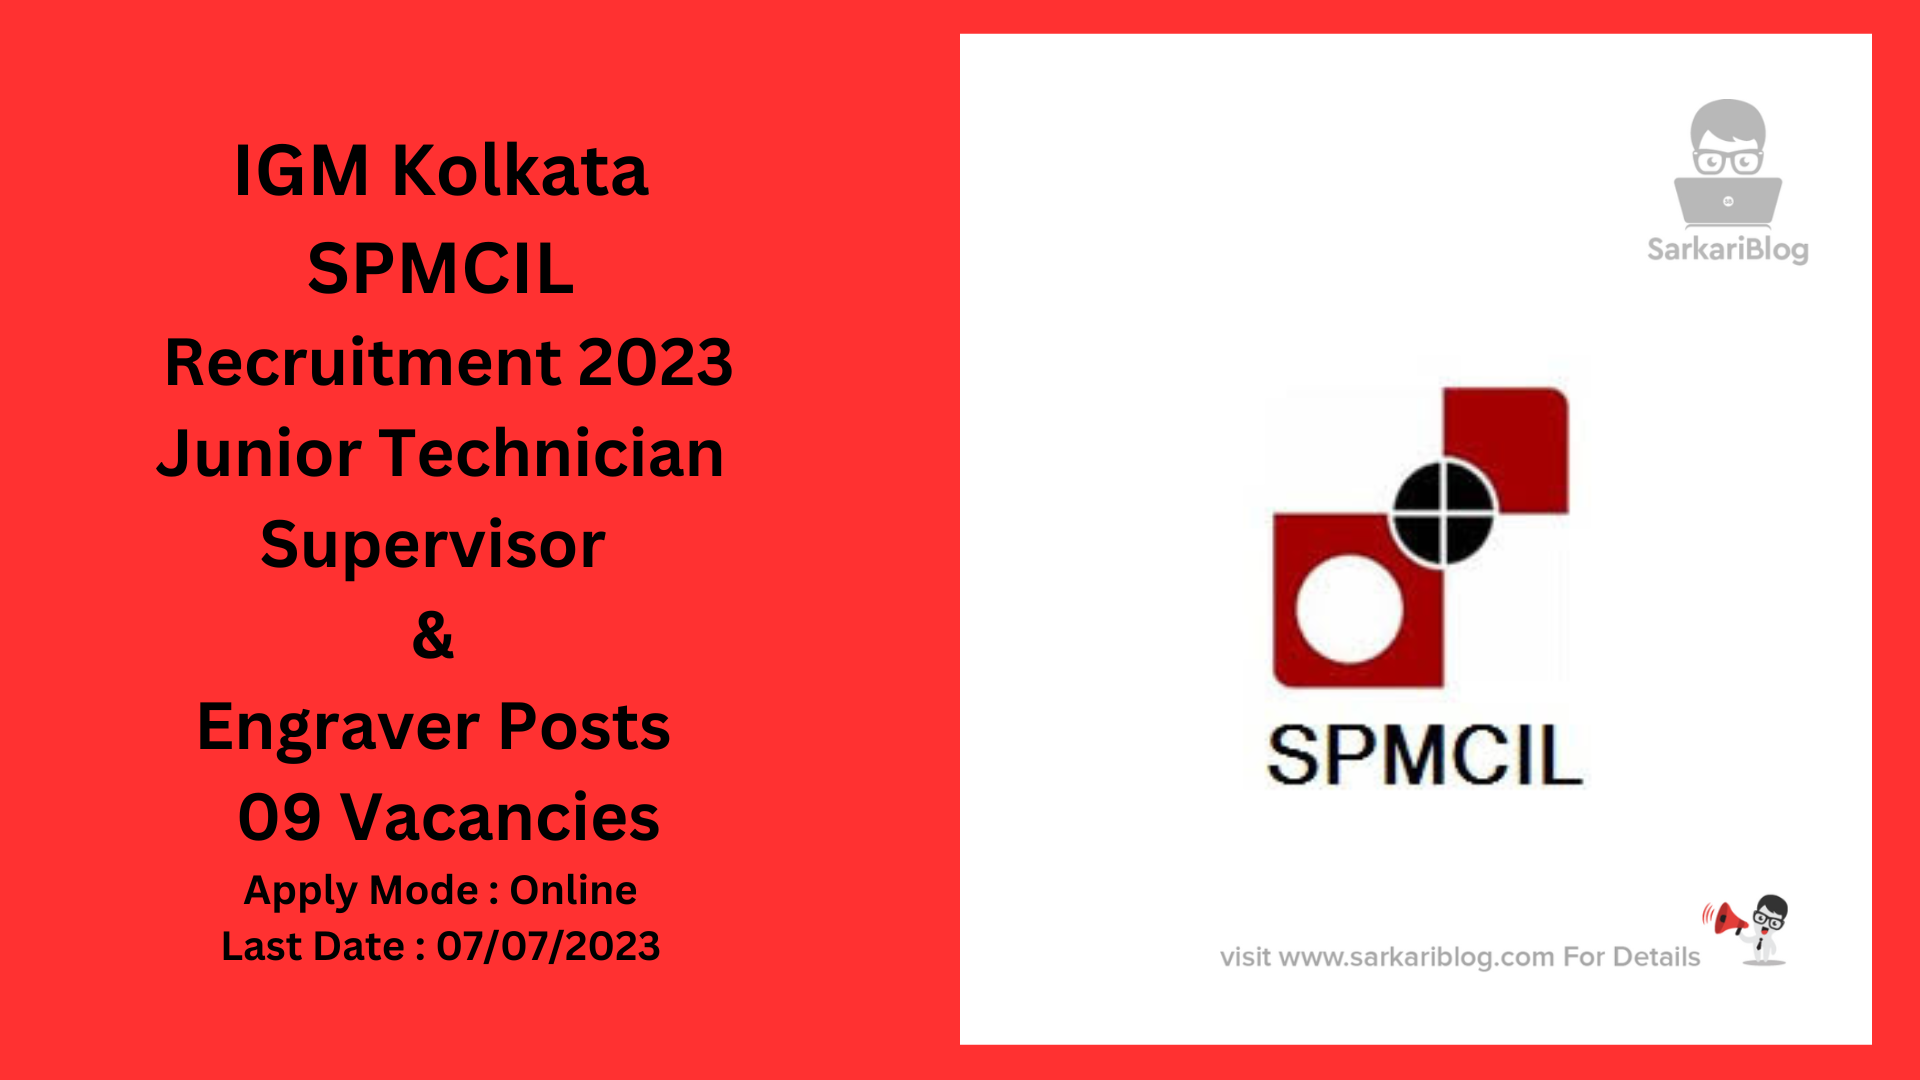 IGM Kolkata Recruitment 2023